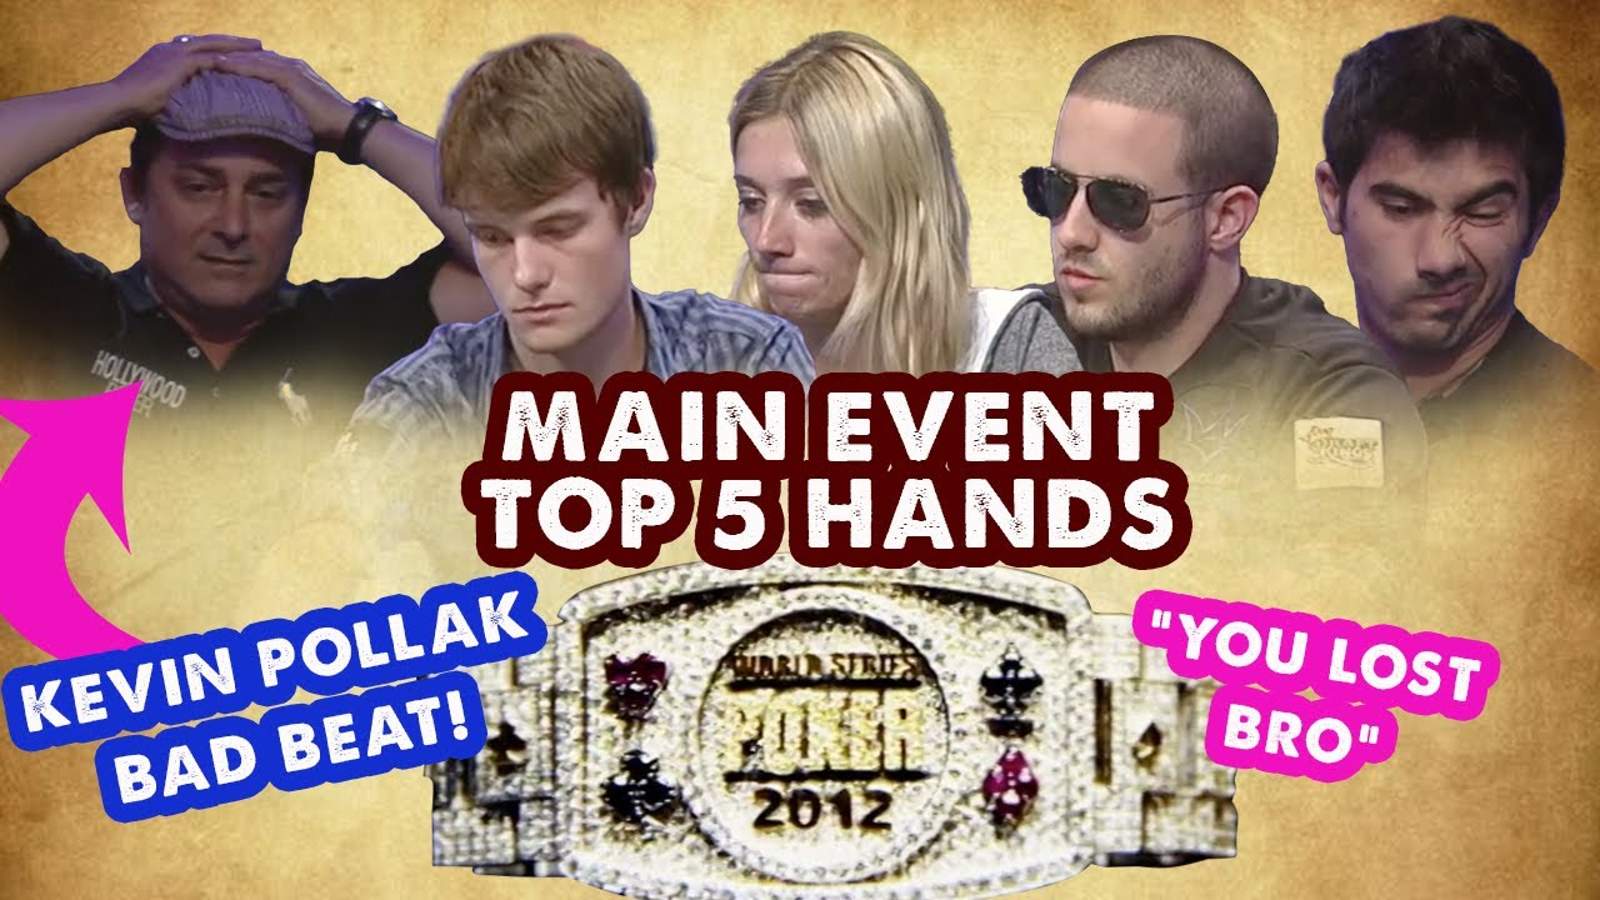 WSOP Main Event 2012 Top 5 Hands!